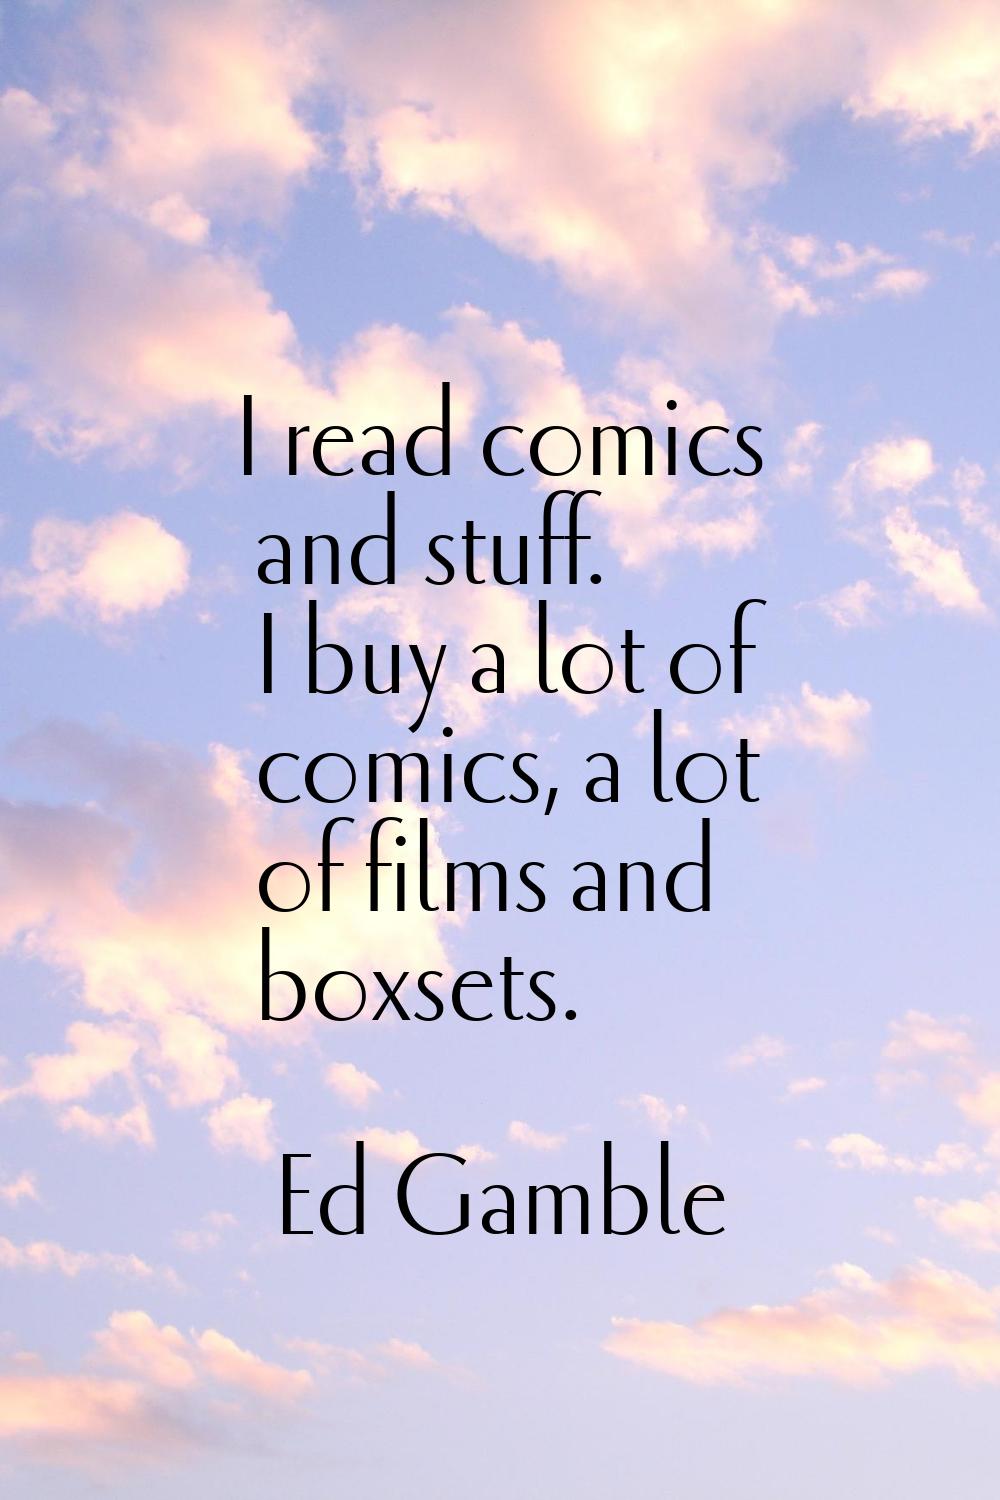 I read comics and stuff. I buy a lot of comics, a lot of films and boxsets.